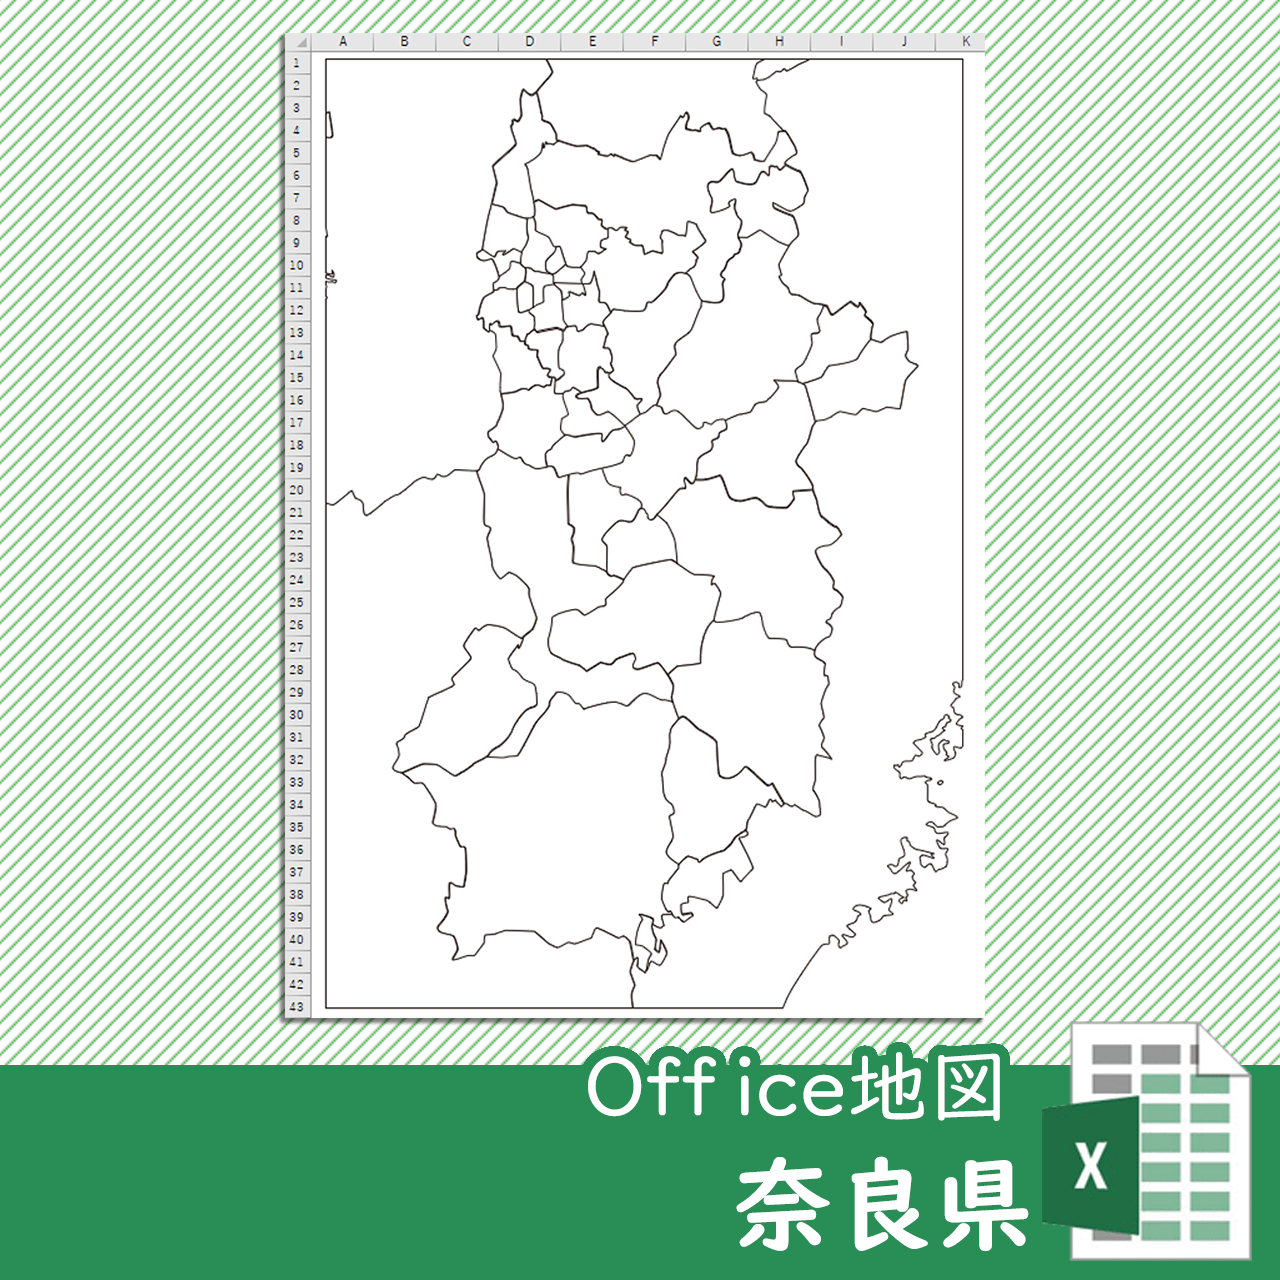 奈良県のOffice地図のサムネイル